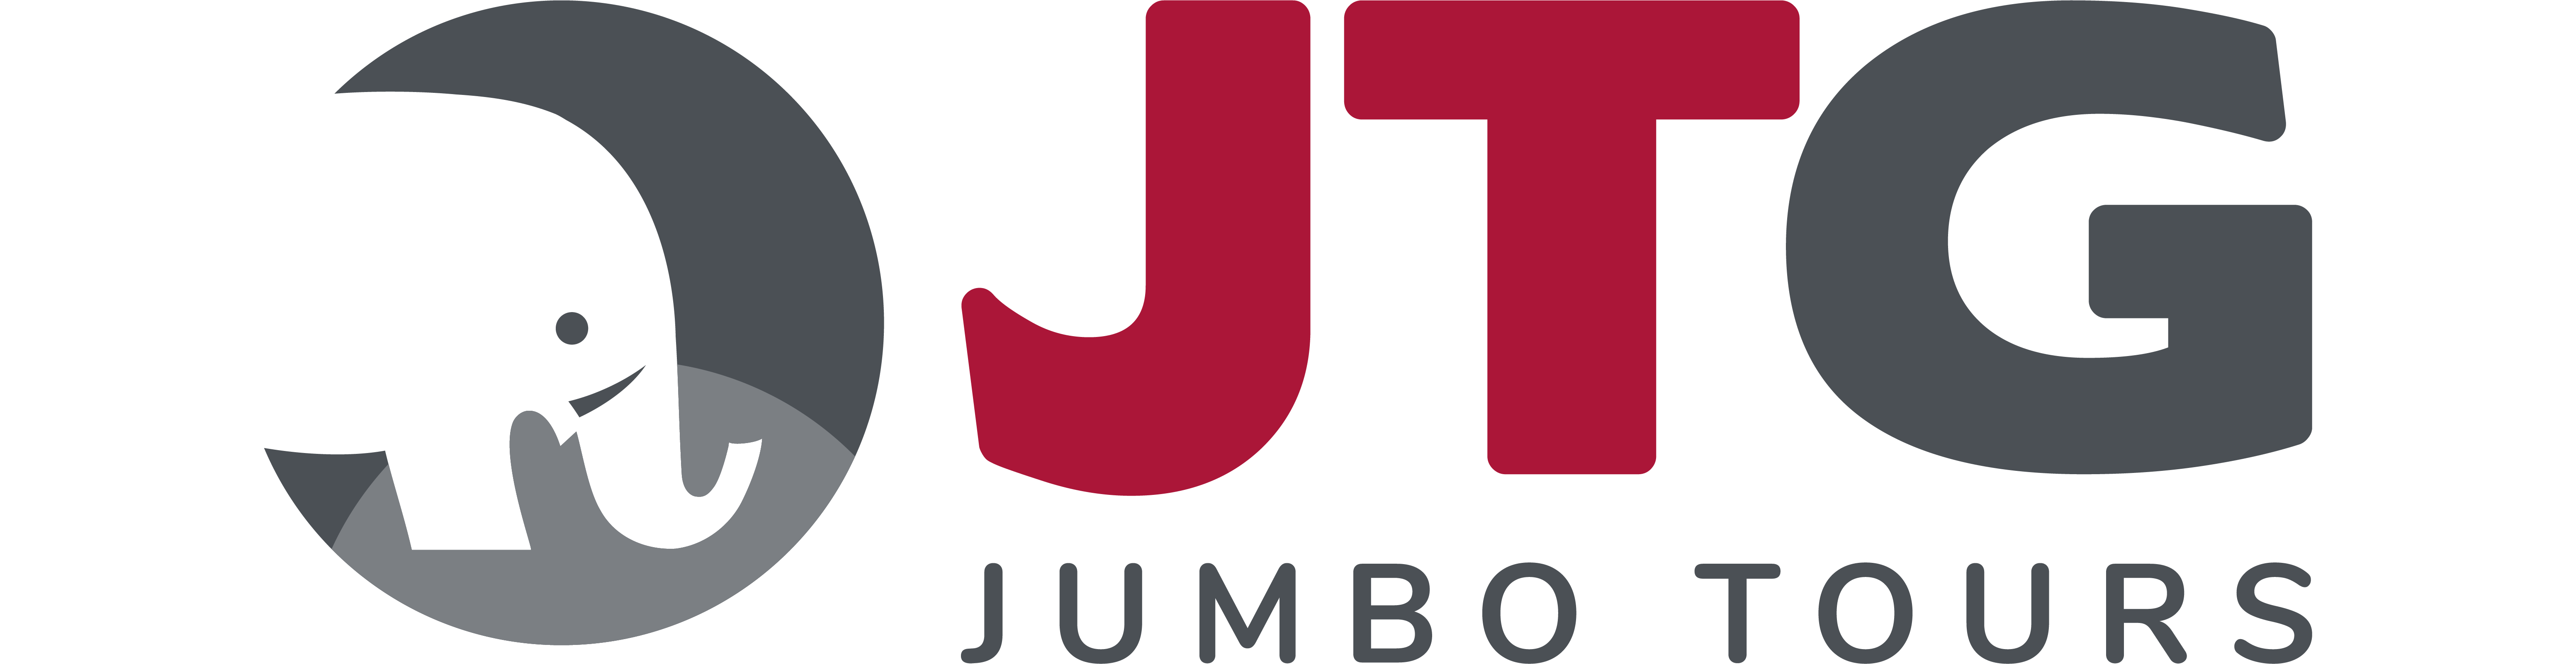 JumboTours